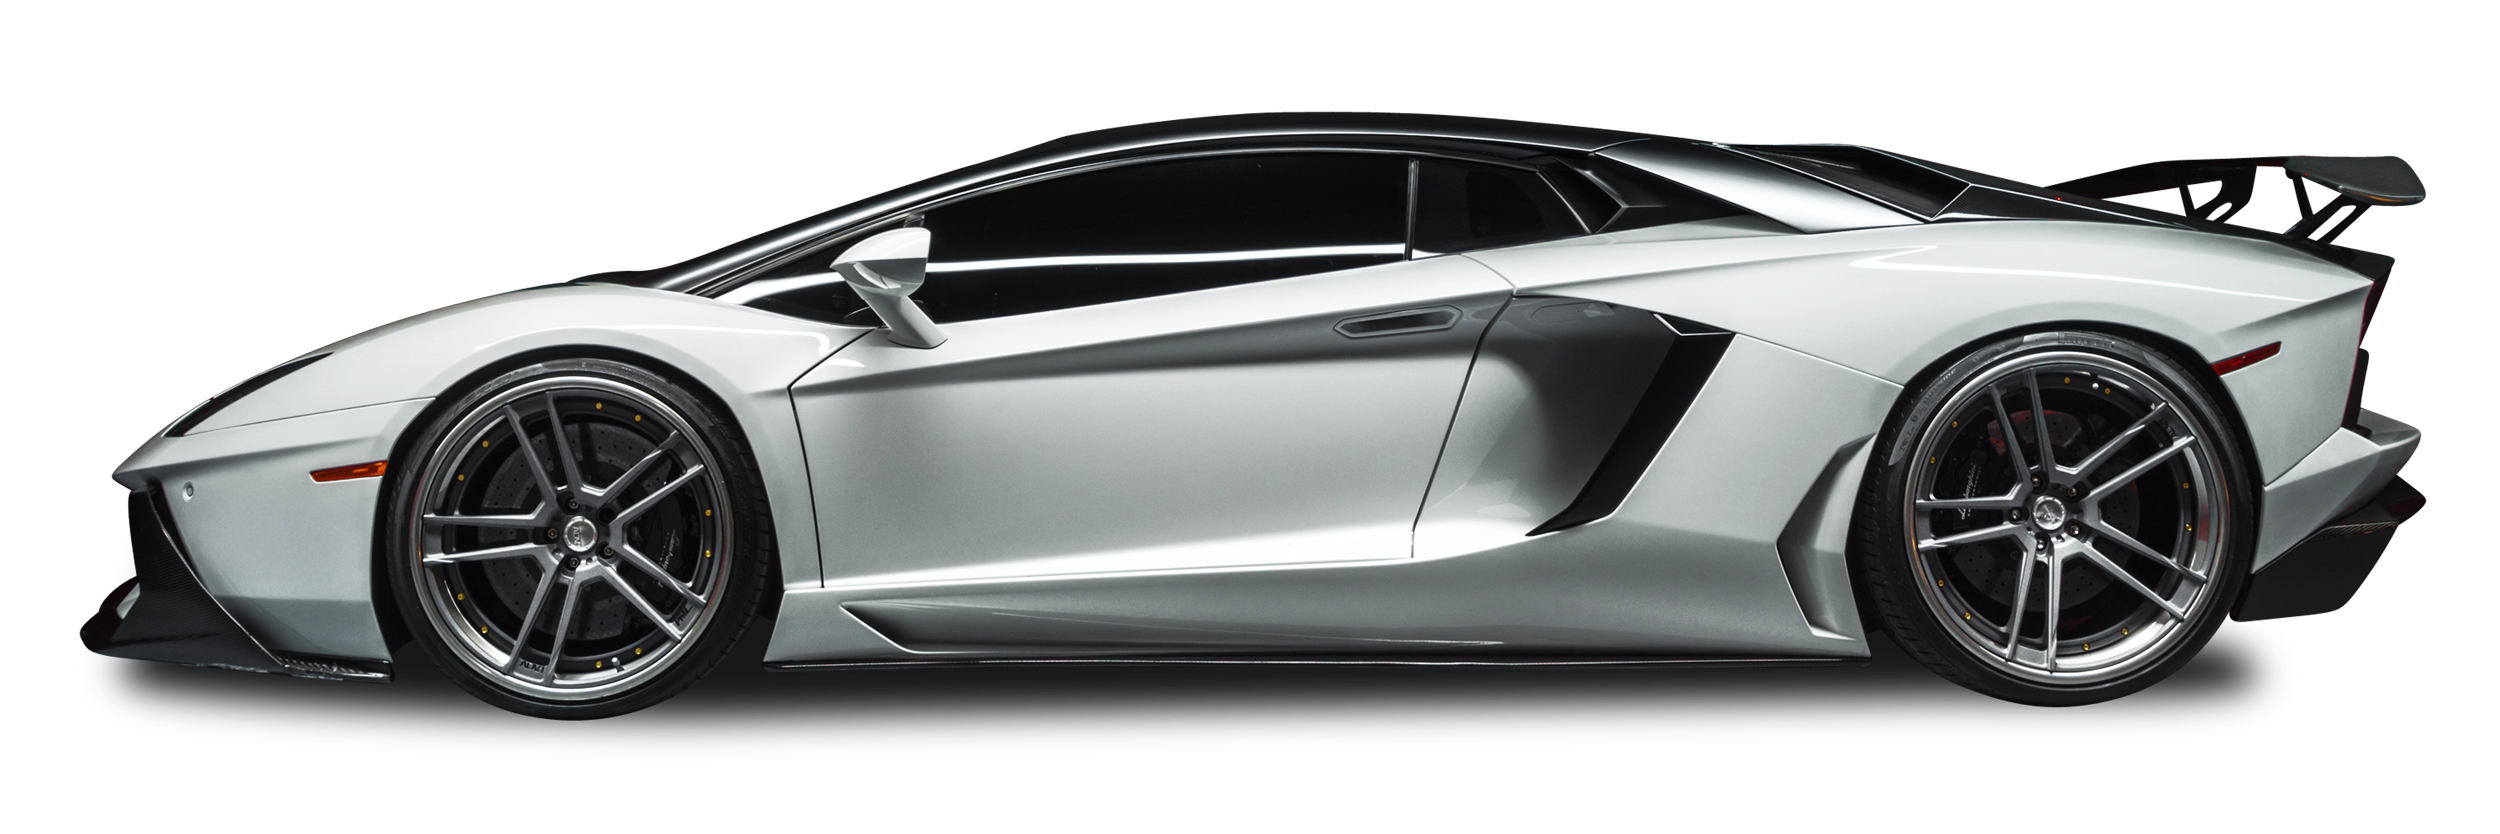 Immagine Trasparente convertibile convertibile di Lamborghini Aventador